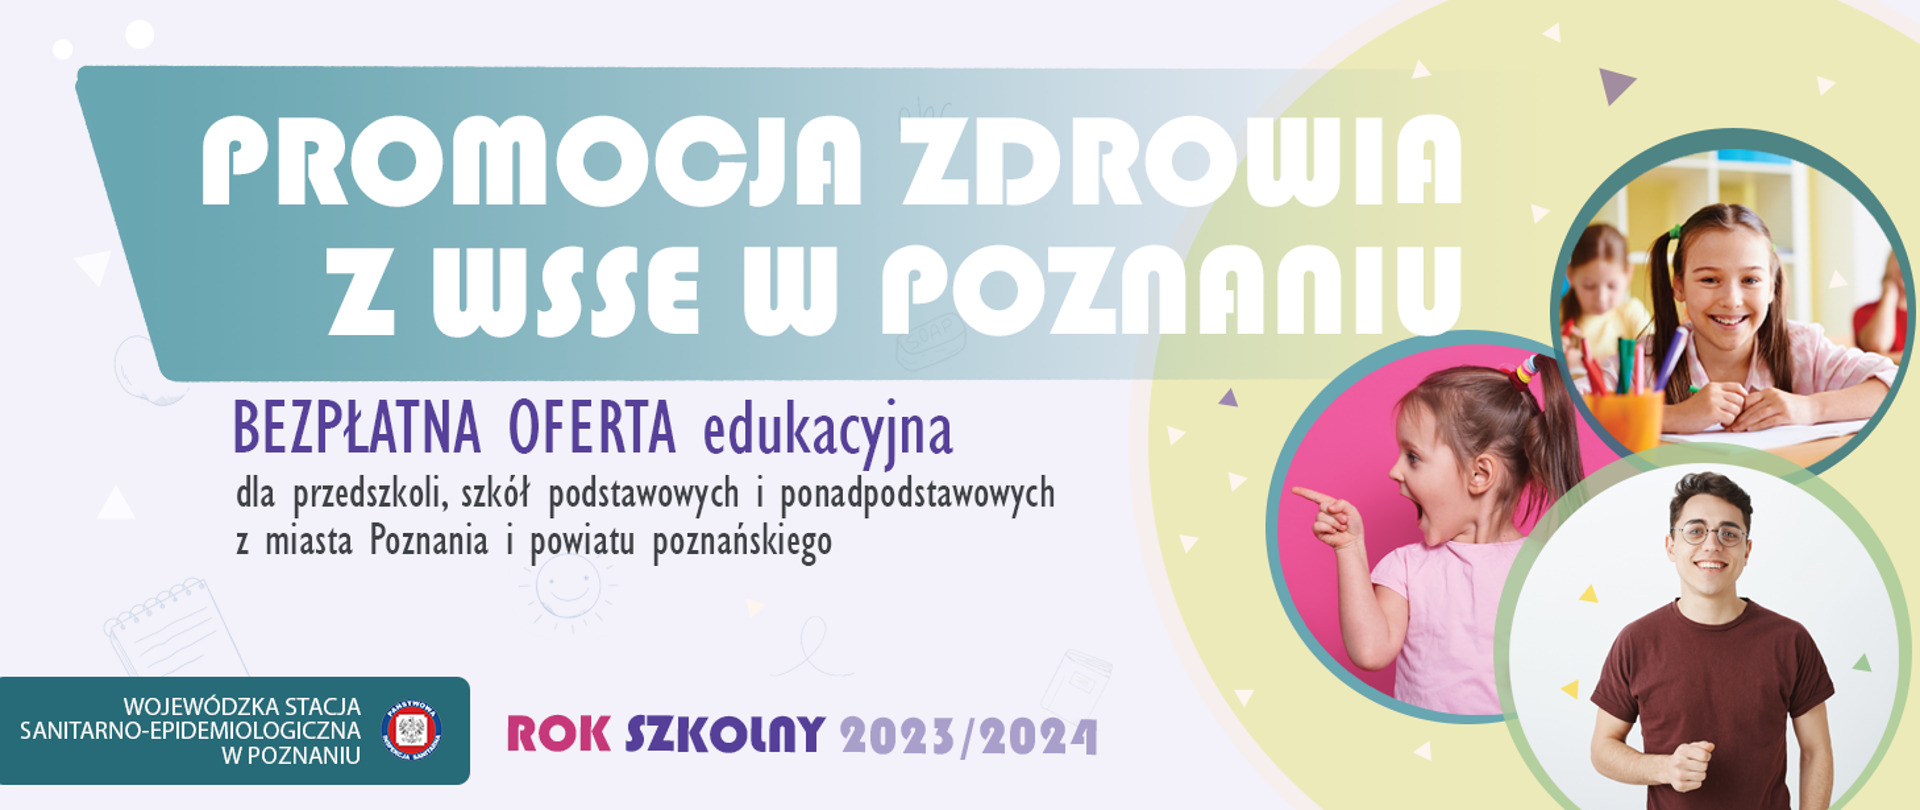 promocja zdrowia z WSSE w Poznaniu baner informacyjny, bezpłatna oferta edukacyjna dla przedszkoli, szkół podstawowych i ponadpodstawowych